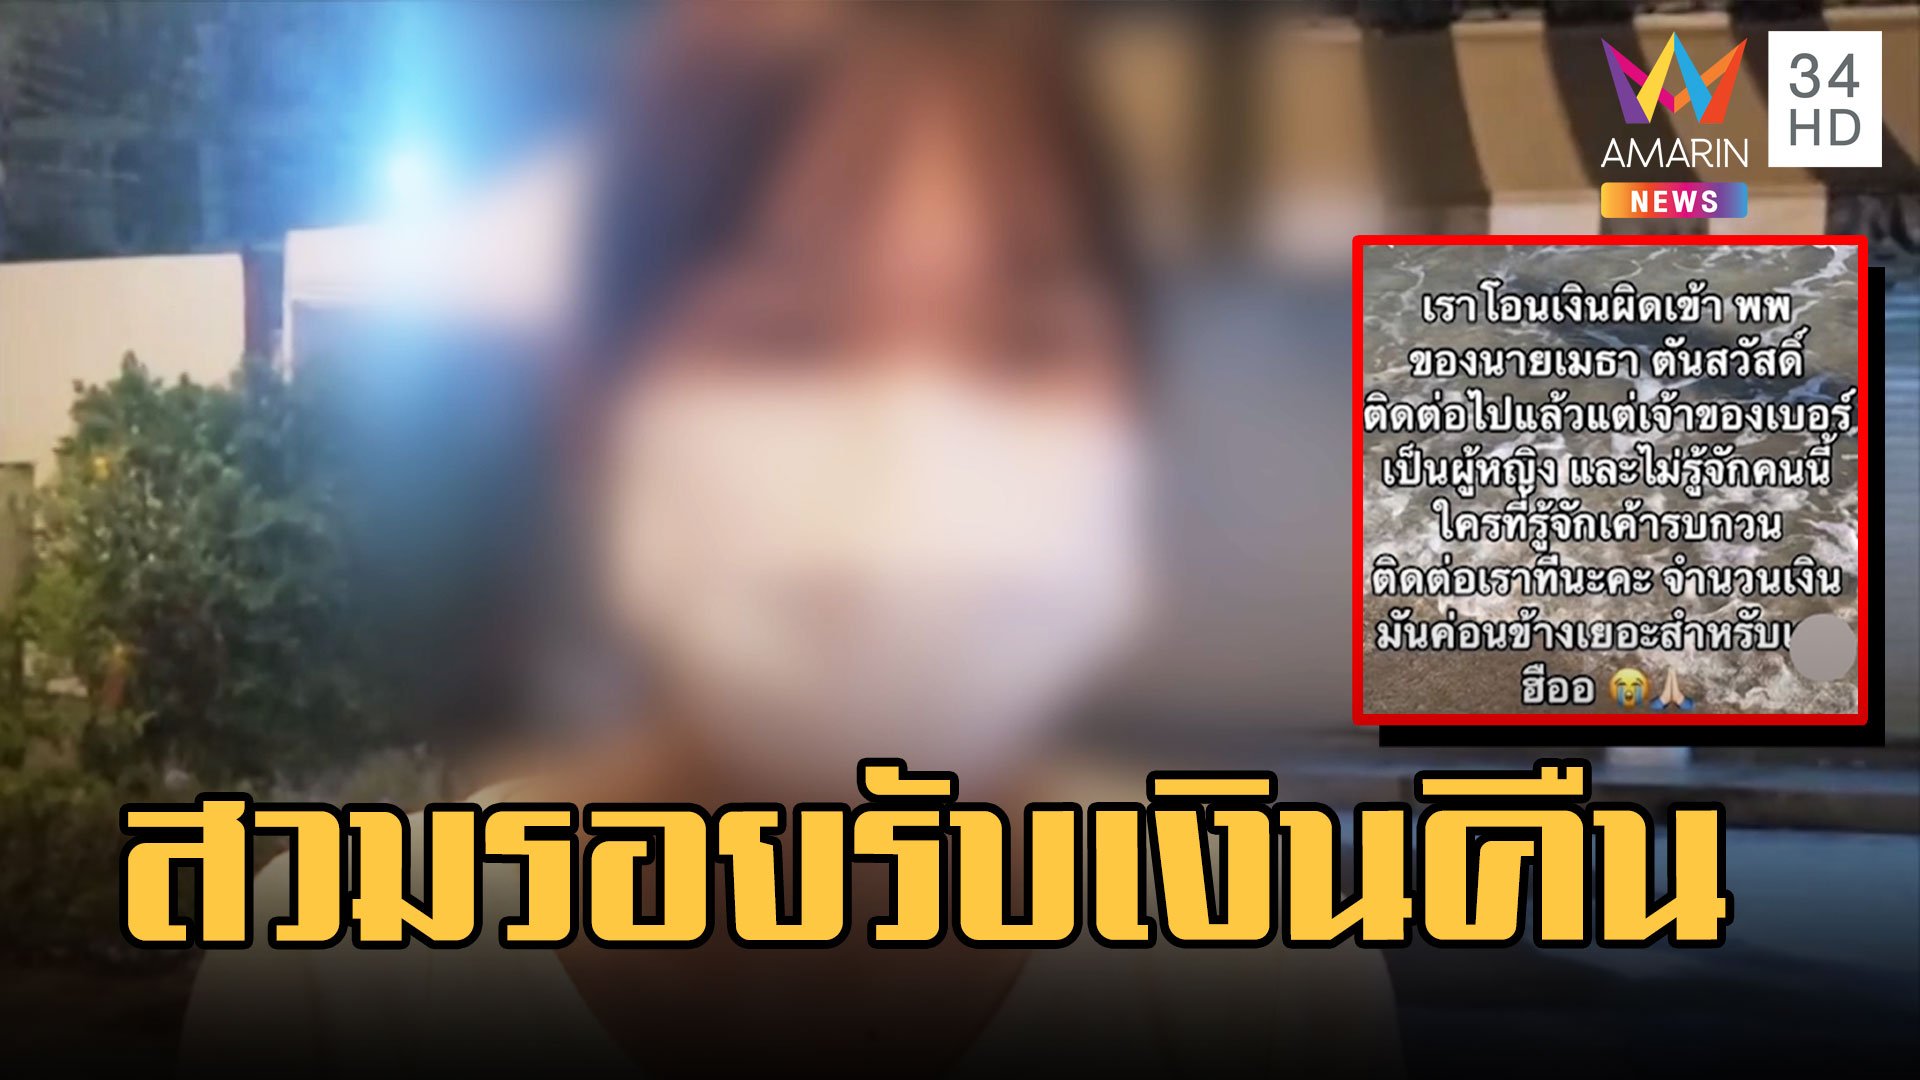 สาวโอนเงินผิด เจอมิจฉาชีพสวมรอยรับเงินคืน | ข่าวเที่ยงอมรินทร์ | 27 ก.พ. 66 | AMARIN TVHD34